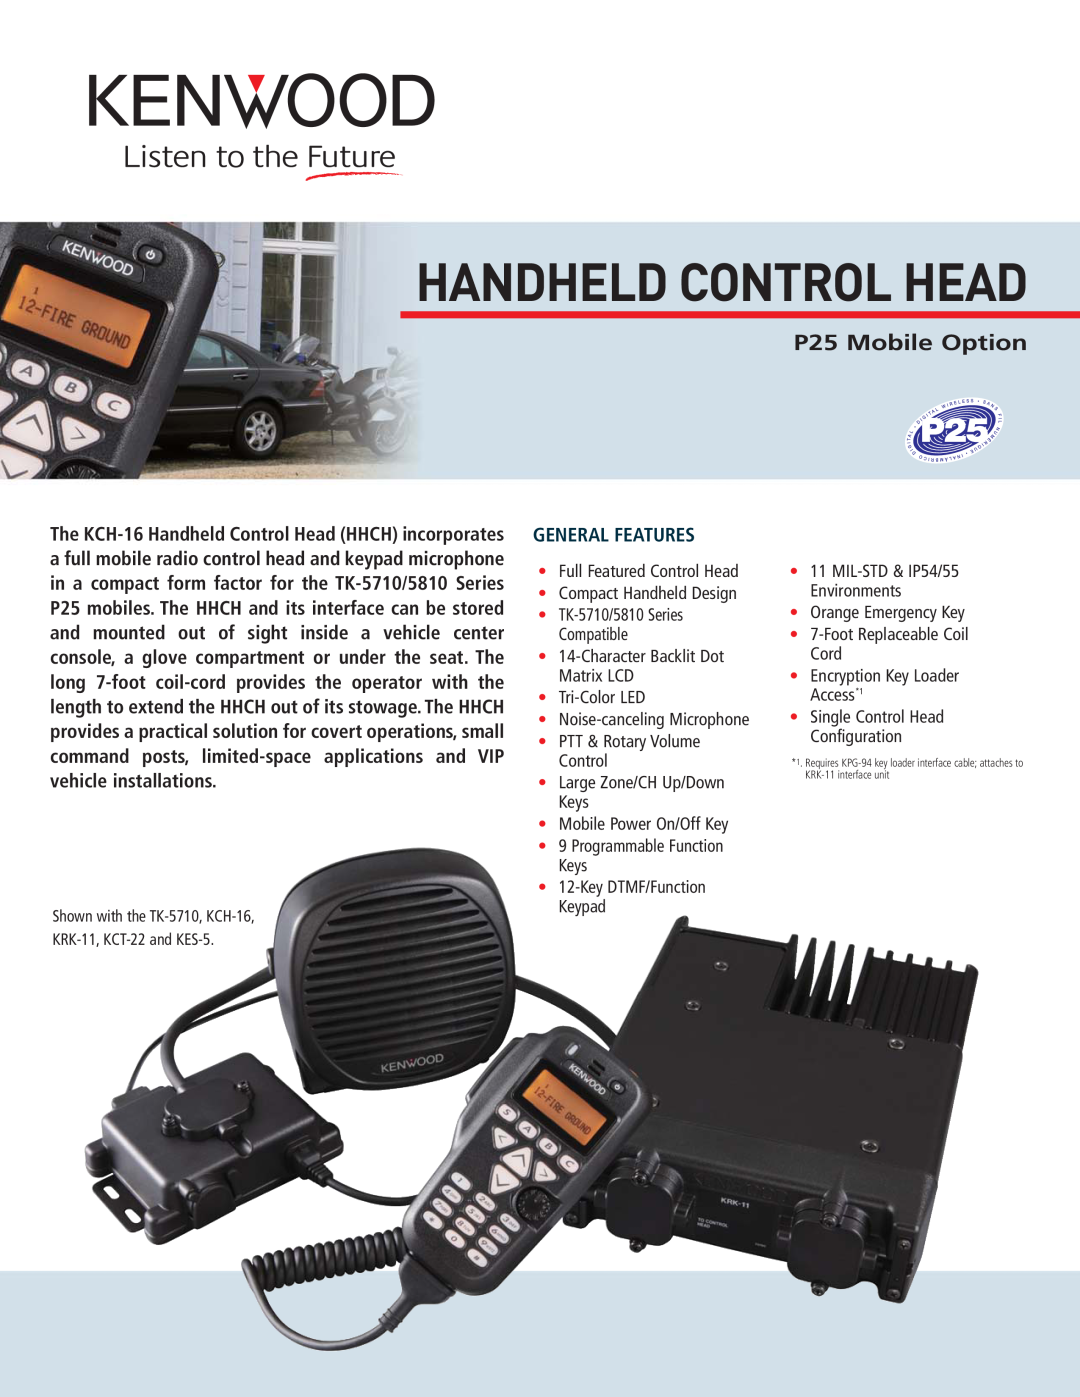 Kenwood TK-5710, KRK-11 manual Handheld Control Head, P25 Mobile Option, General Features, Programmable Function Keys 